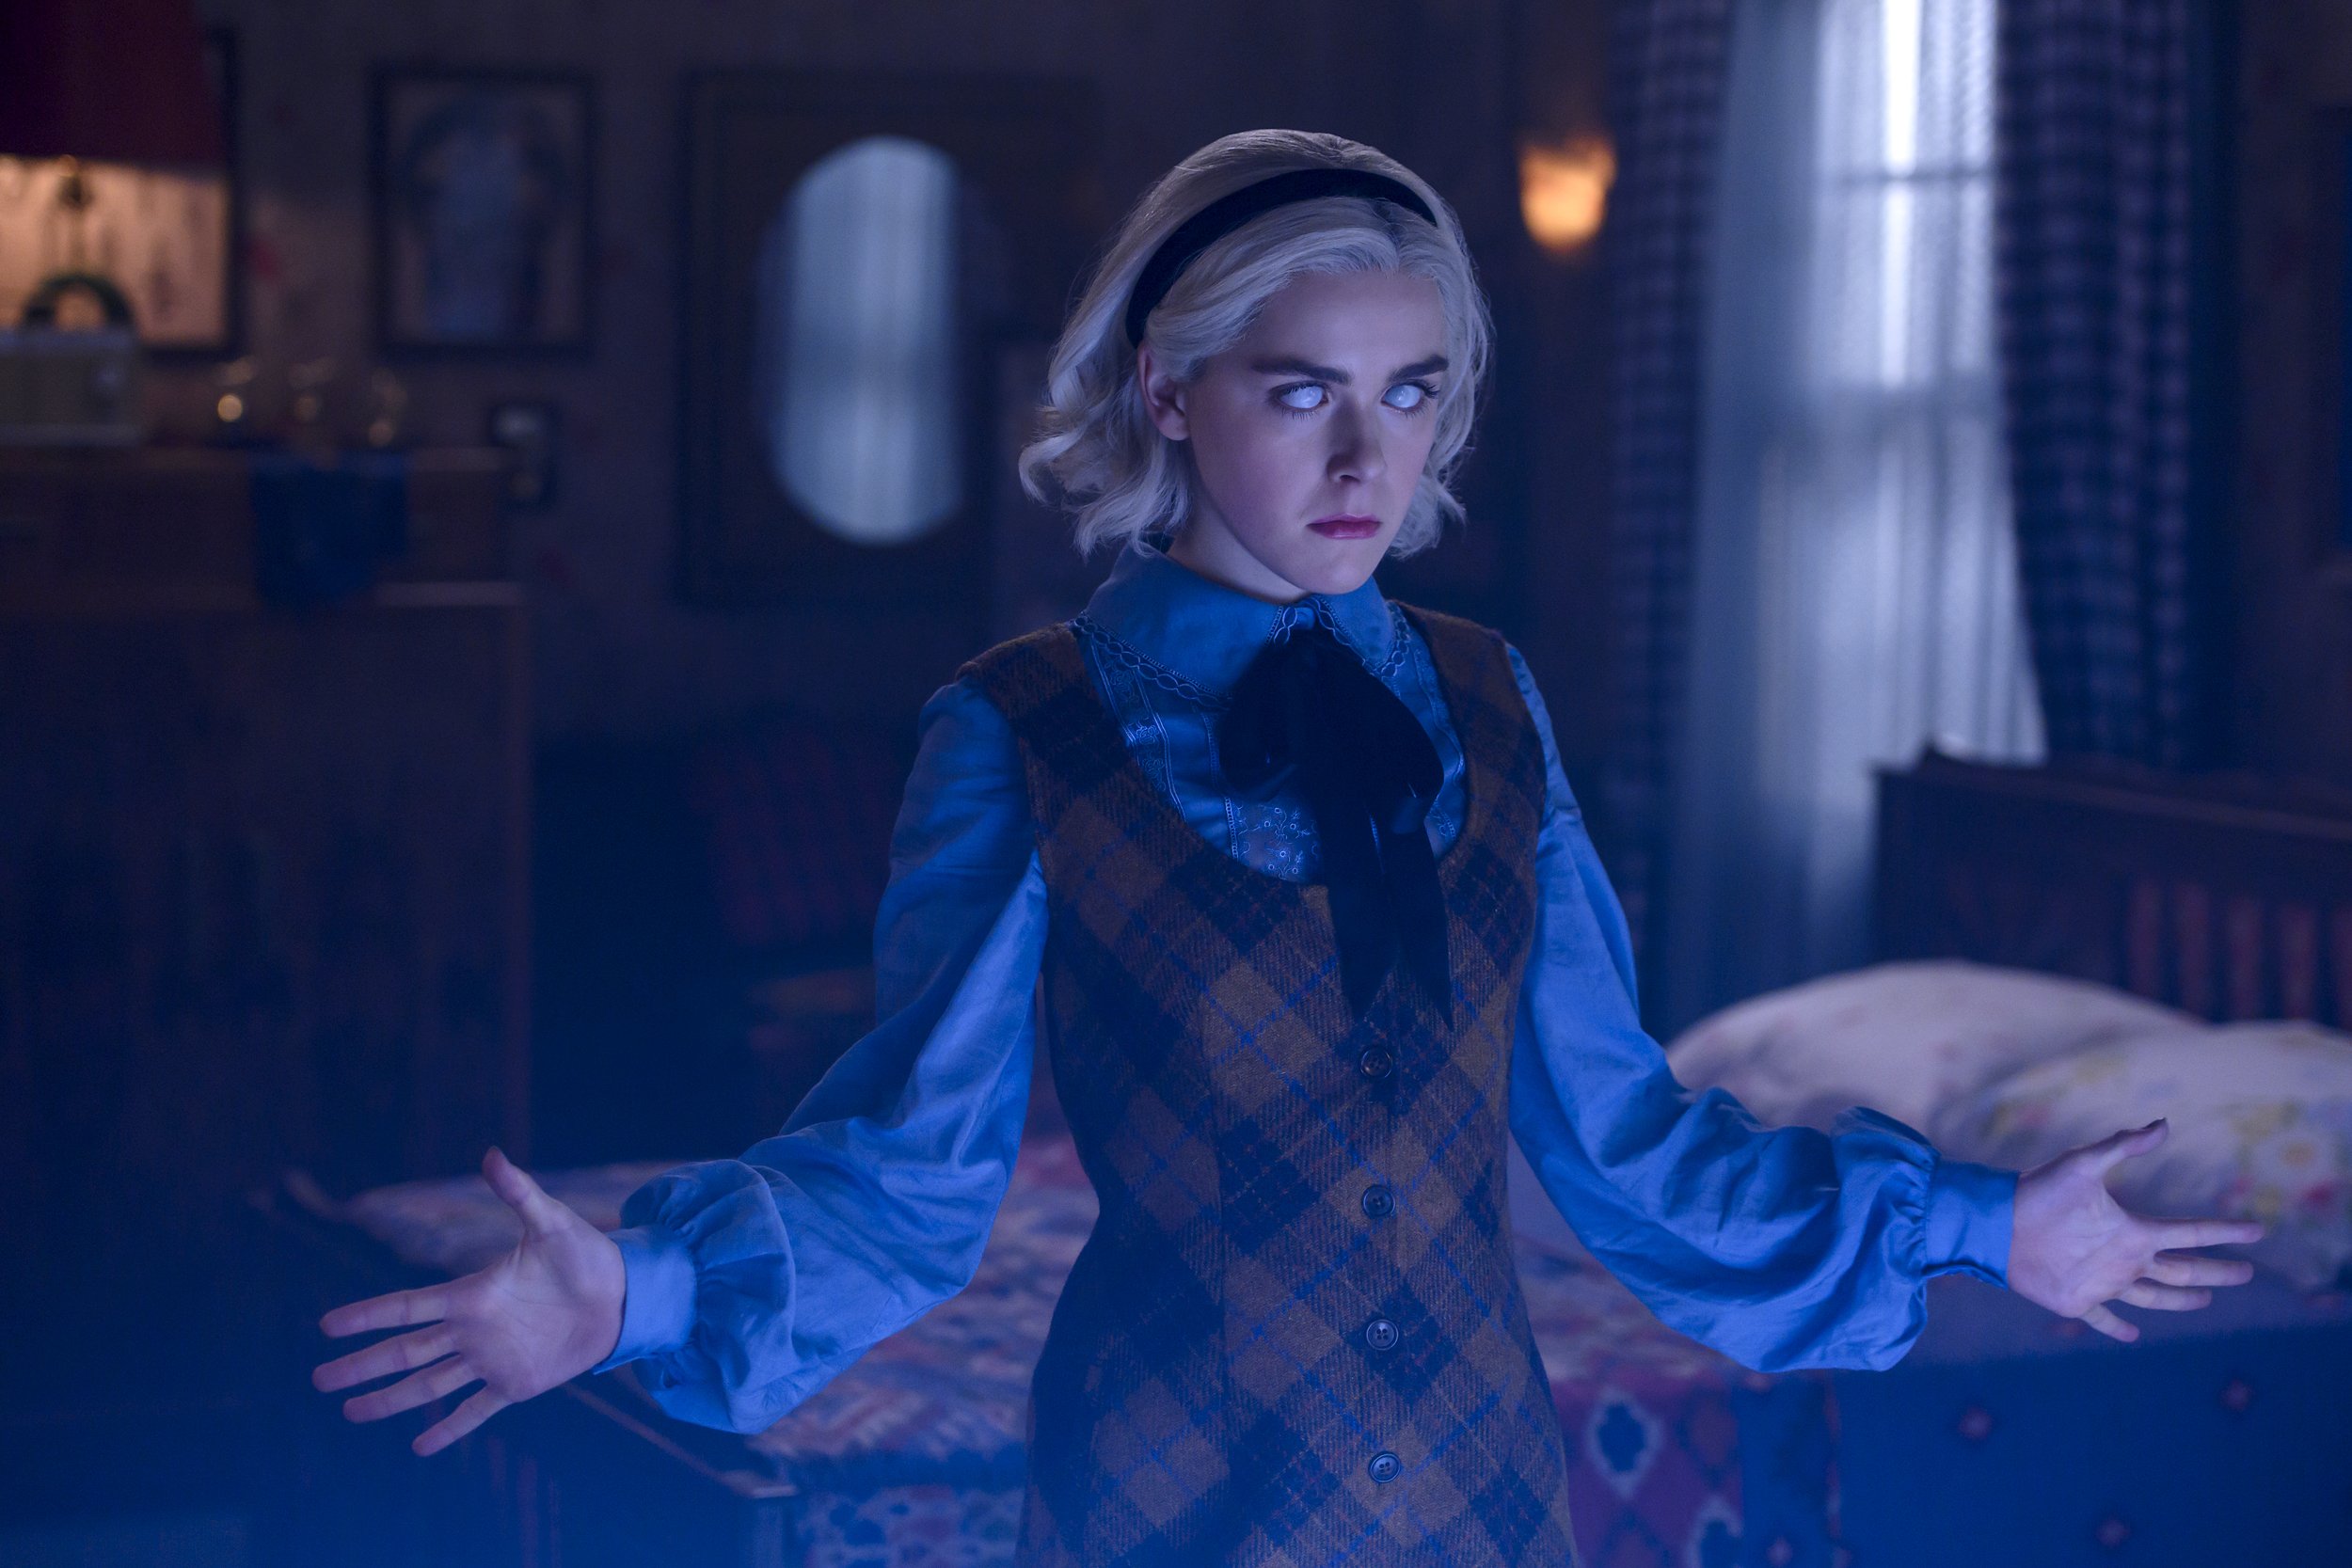 A produção original Netflix acompanha uma adolescente bruxa